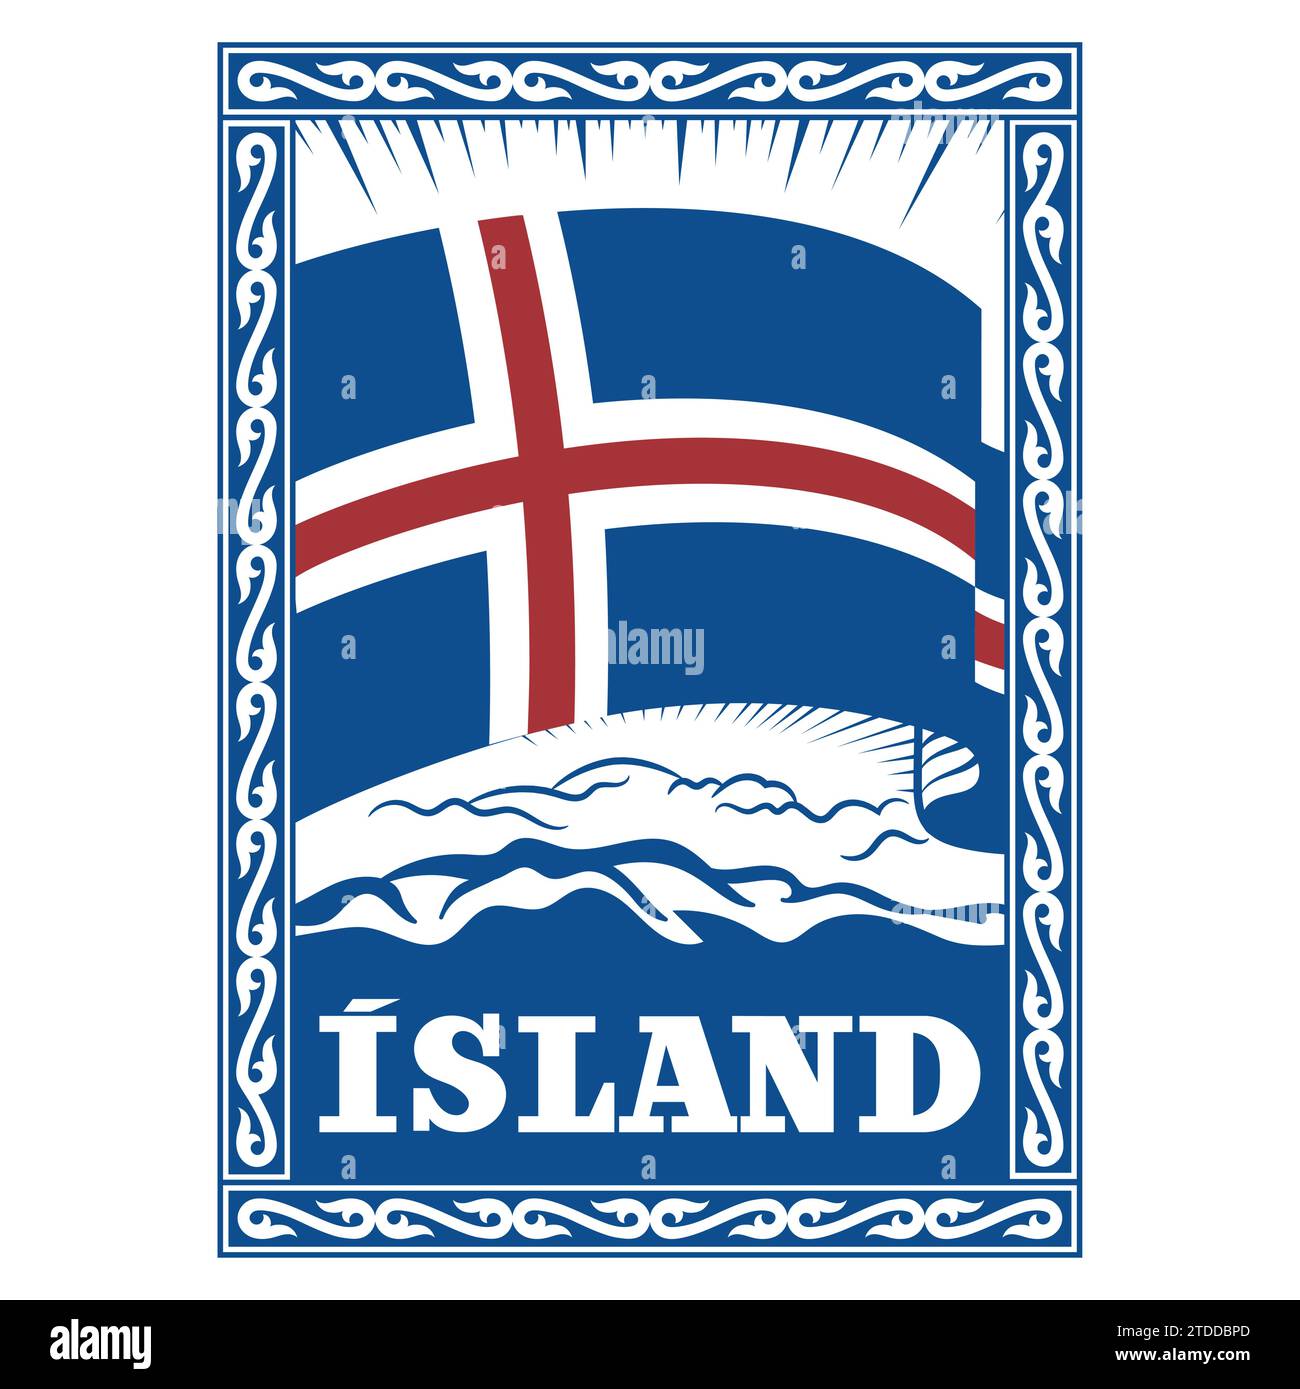 Diseño de estilo vikingo. Bandera islandesa vintage enmarcada en un patrón celta escandinavo antiguo y la inscripción Islandia Ilustración del Vector